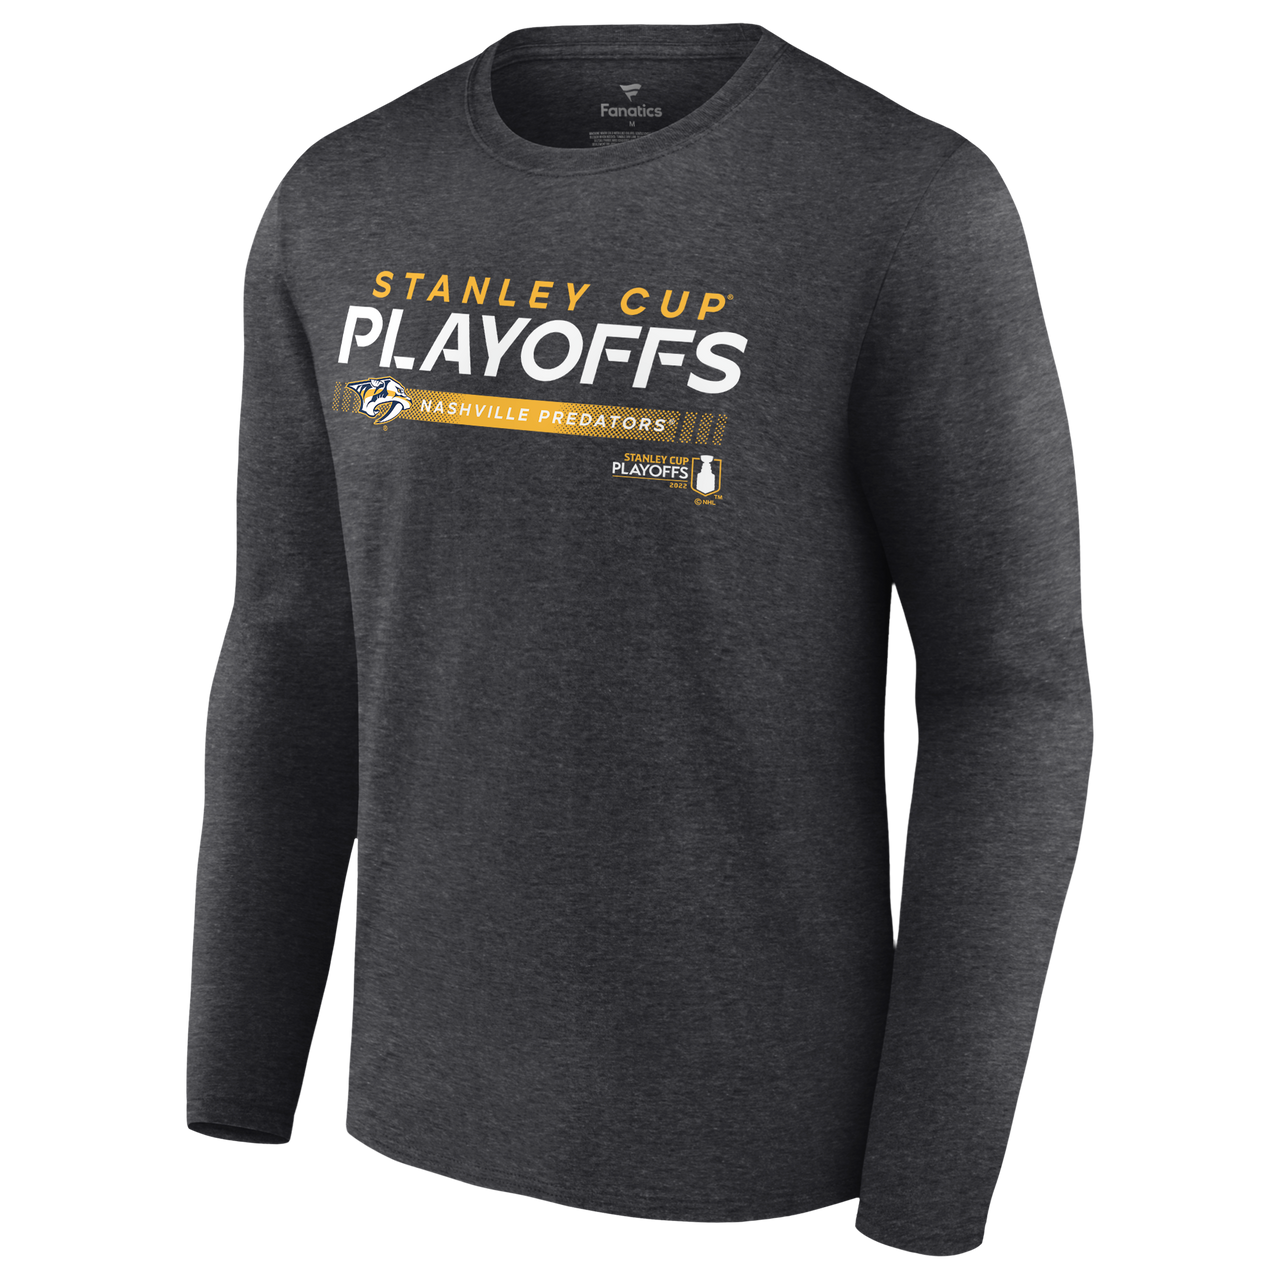 2021 Stanley Cup Playoffs Fanatics T-Shirt - Nashville Predators Locker Room